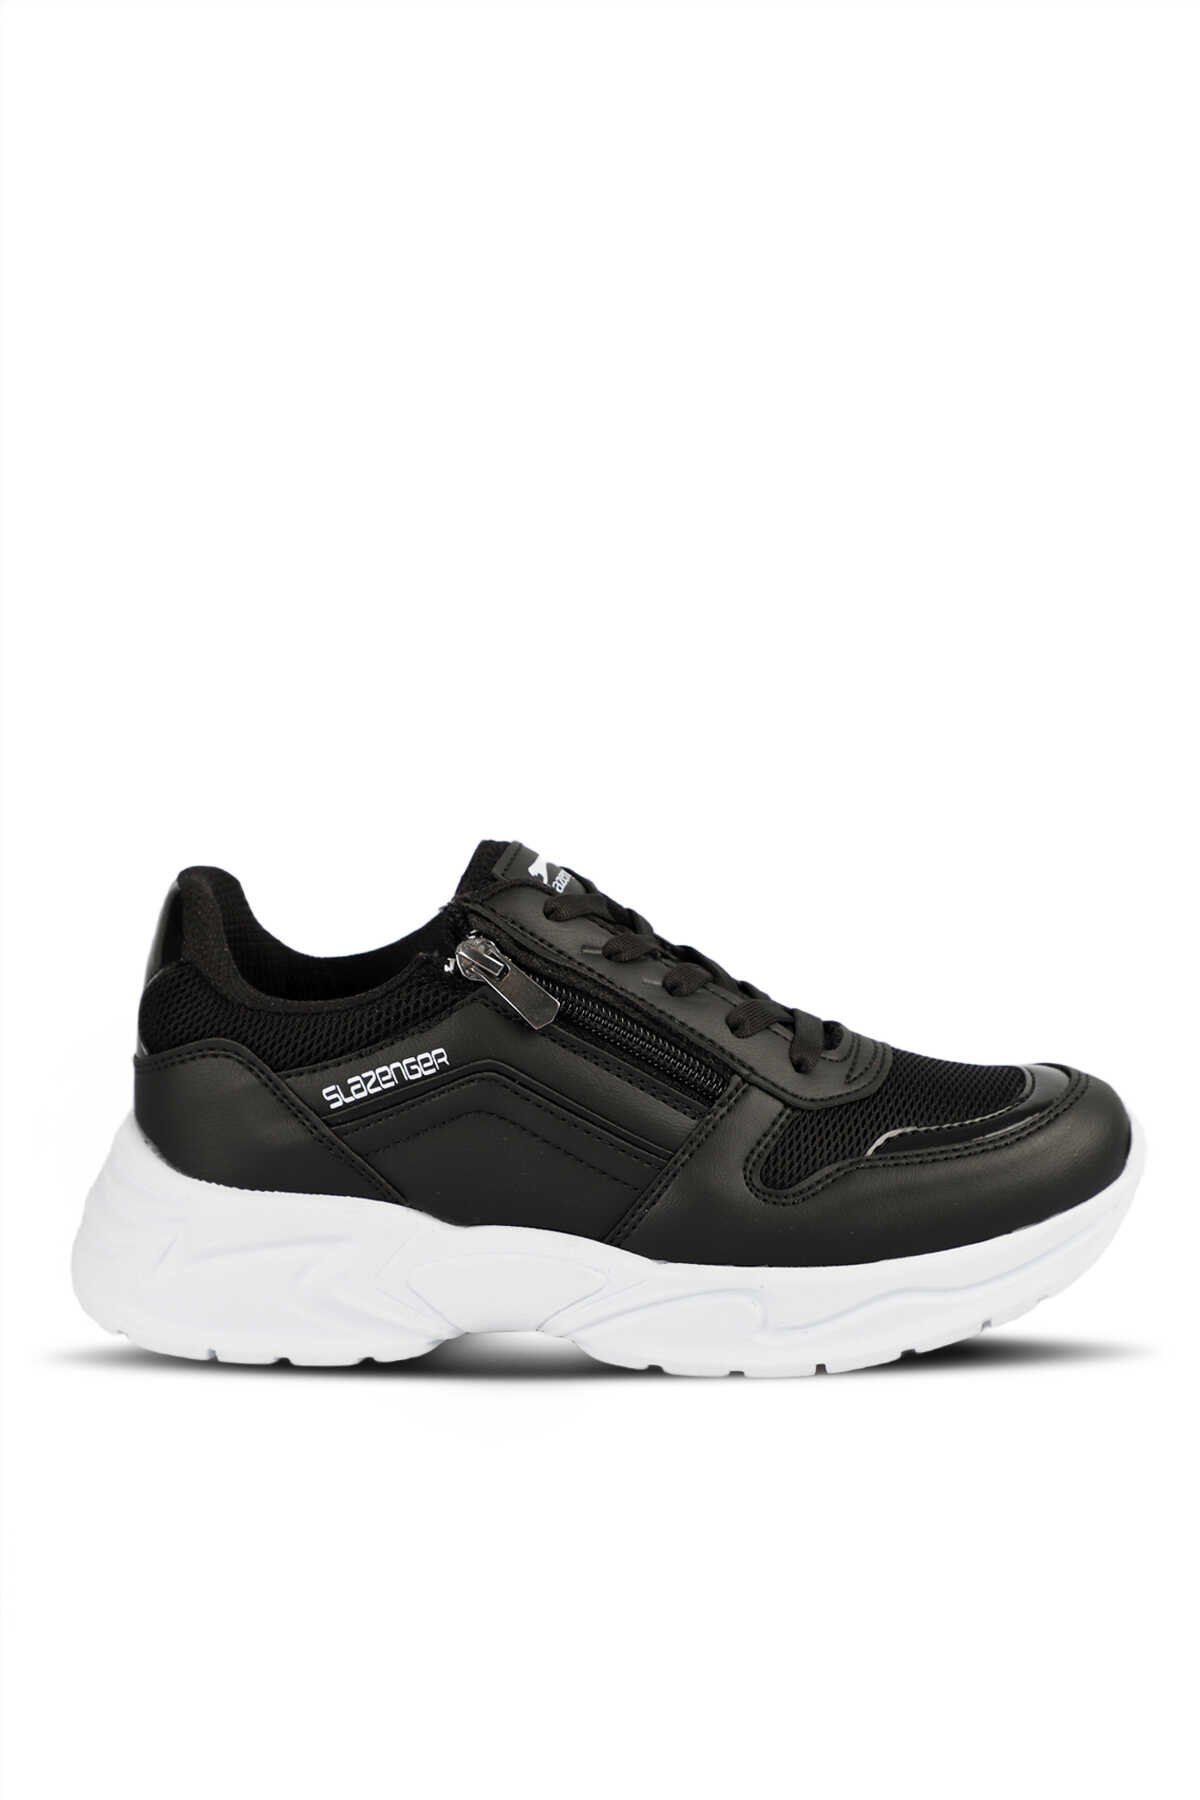 Slazenger - KARSTEN I Sneaker Kadın Ayakkabı Siyah / Beyaz